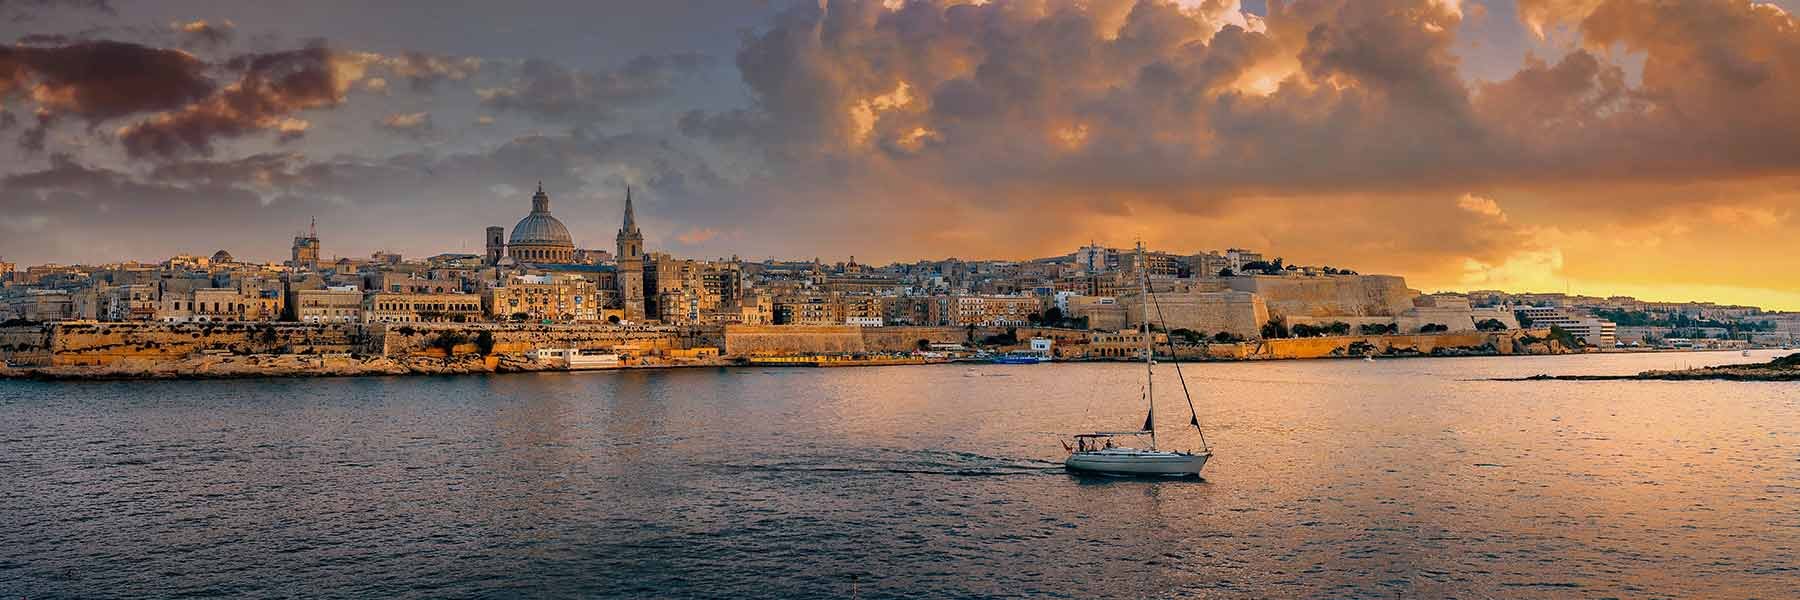 Corporate Taxation in Malta